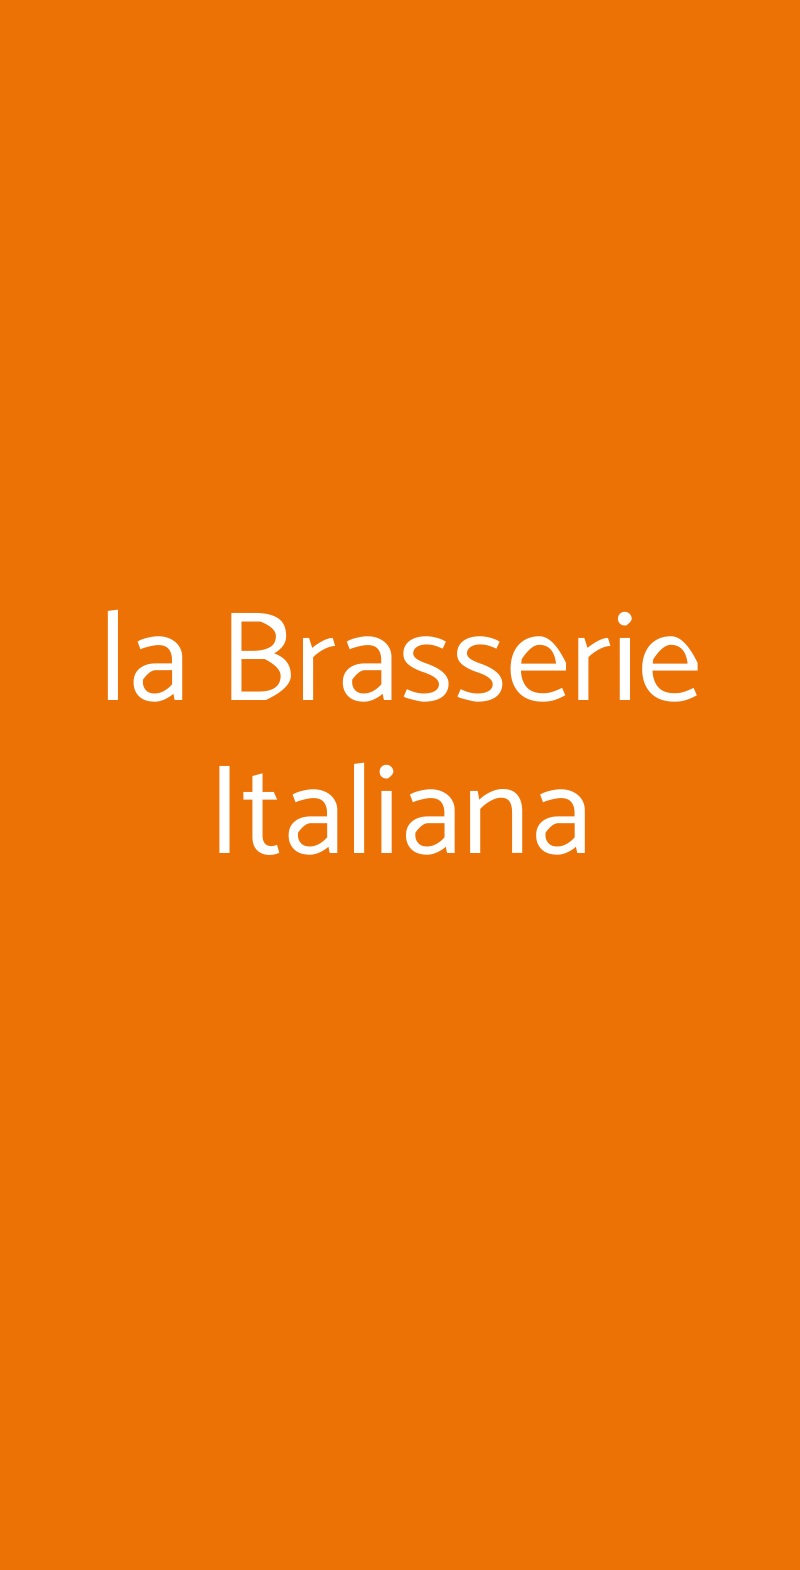 la Brasserie Italiana Milano menù 1 pagina